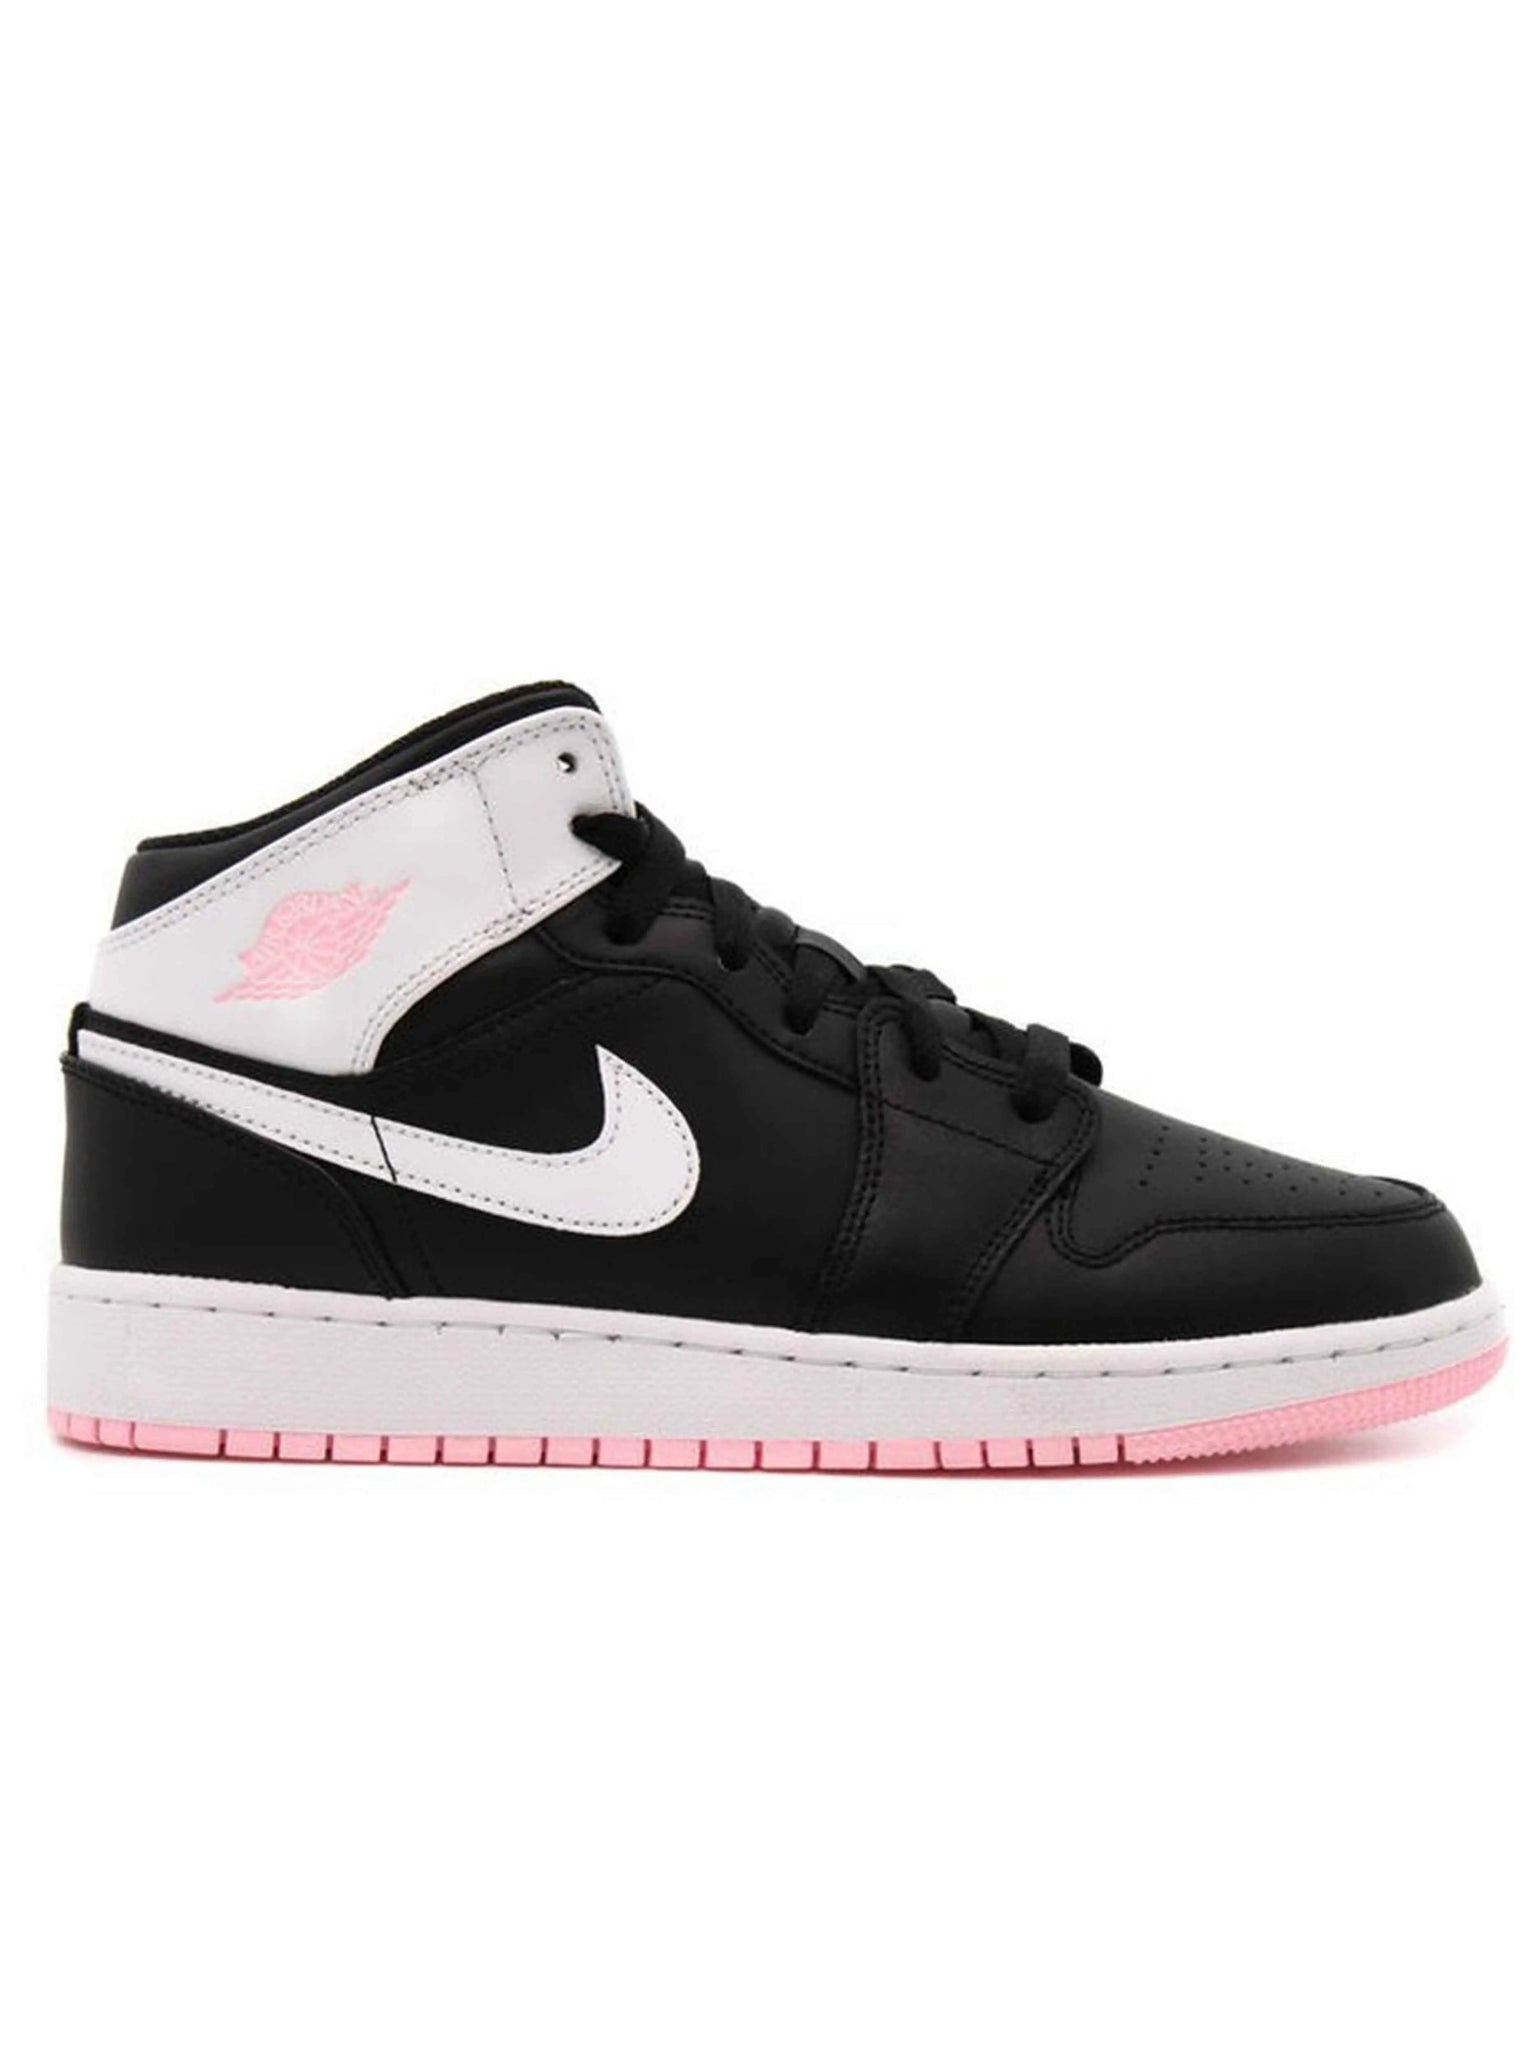 Nike Air Jordan 1 Mid Arctic Pink Black Prior